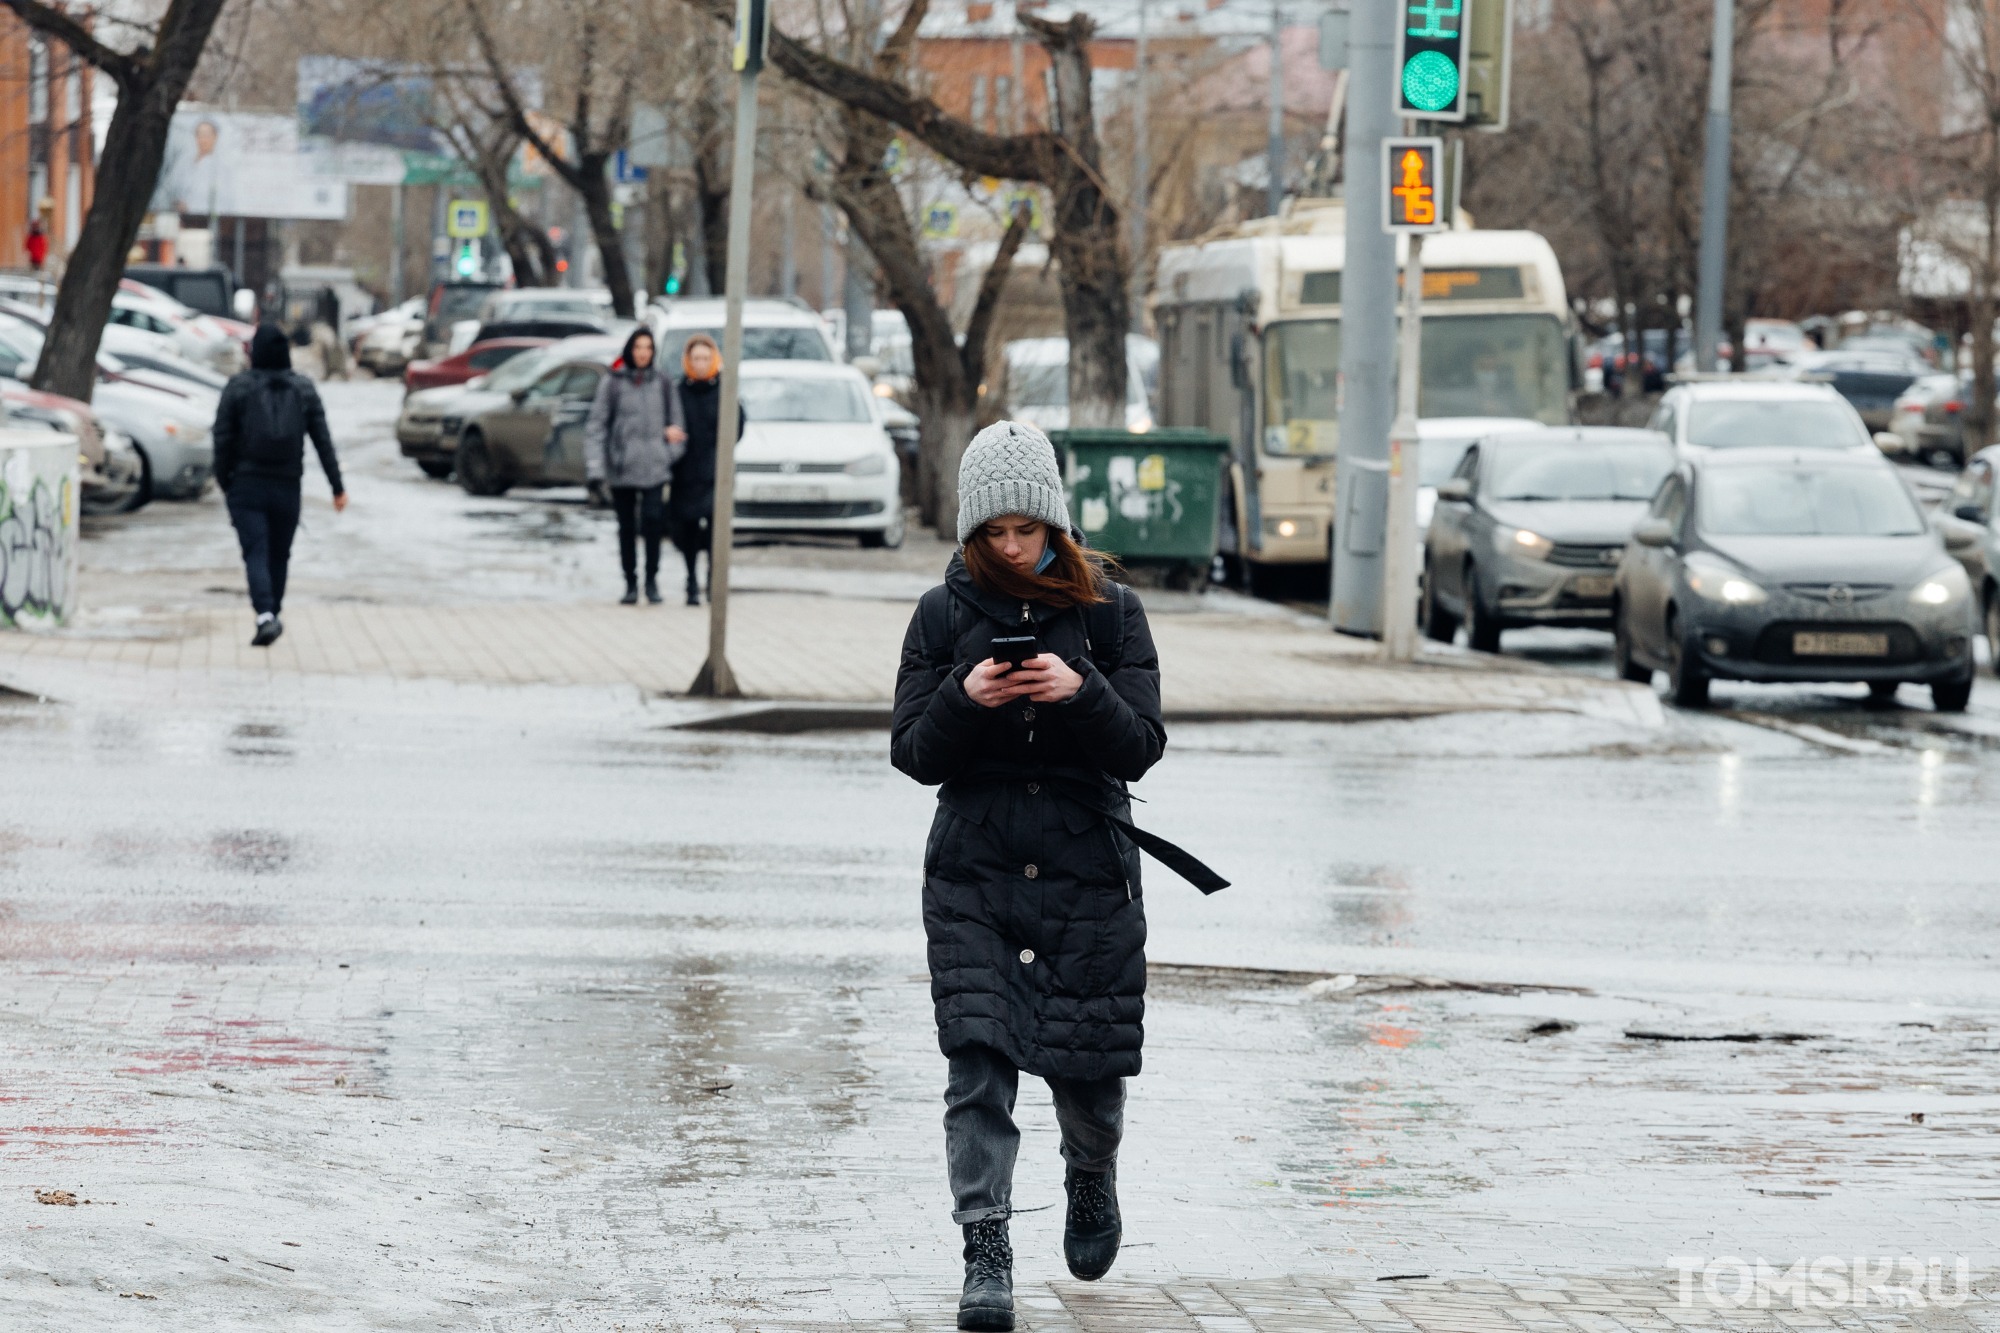 Синоптики объявили штормовое предупреждение на субботу в Томске